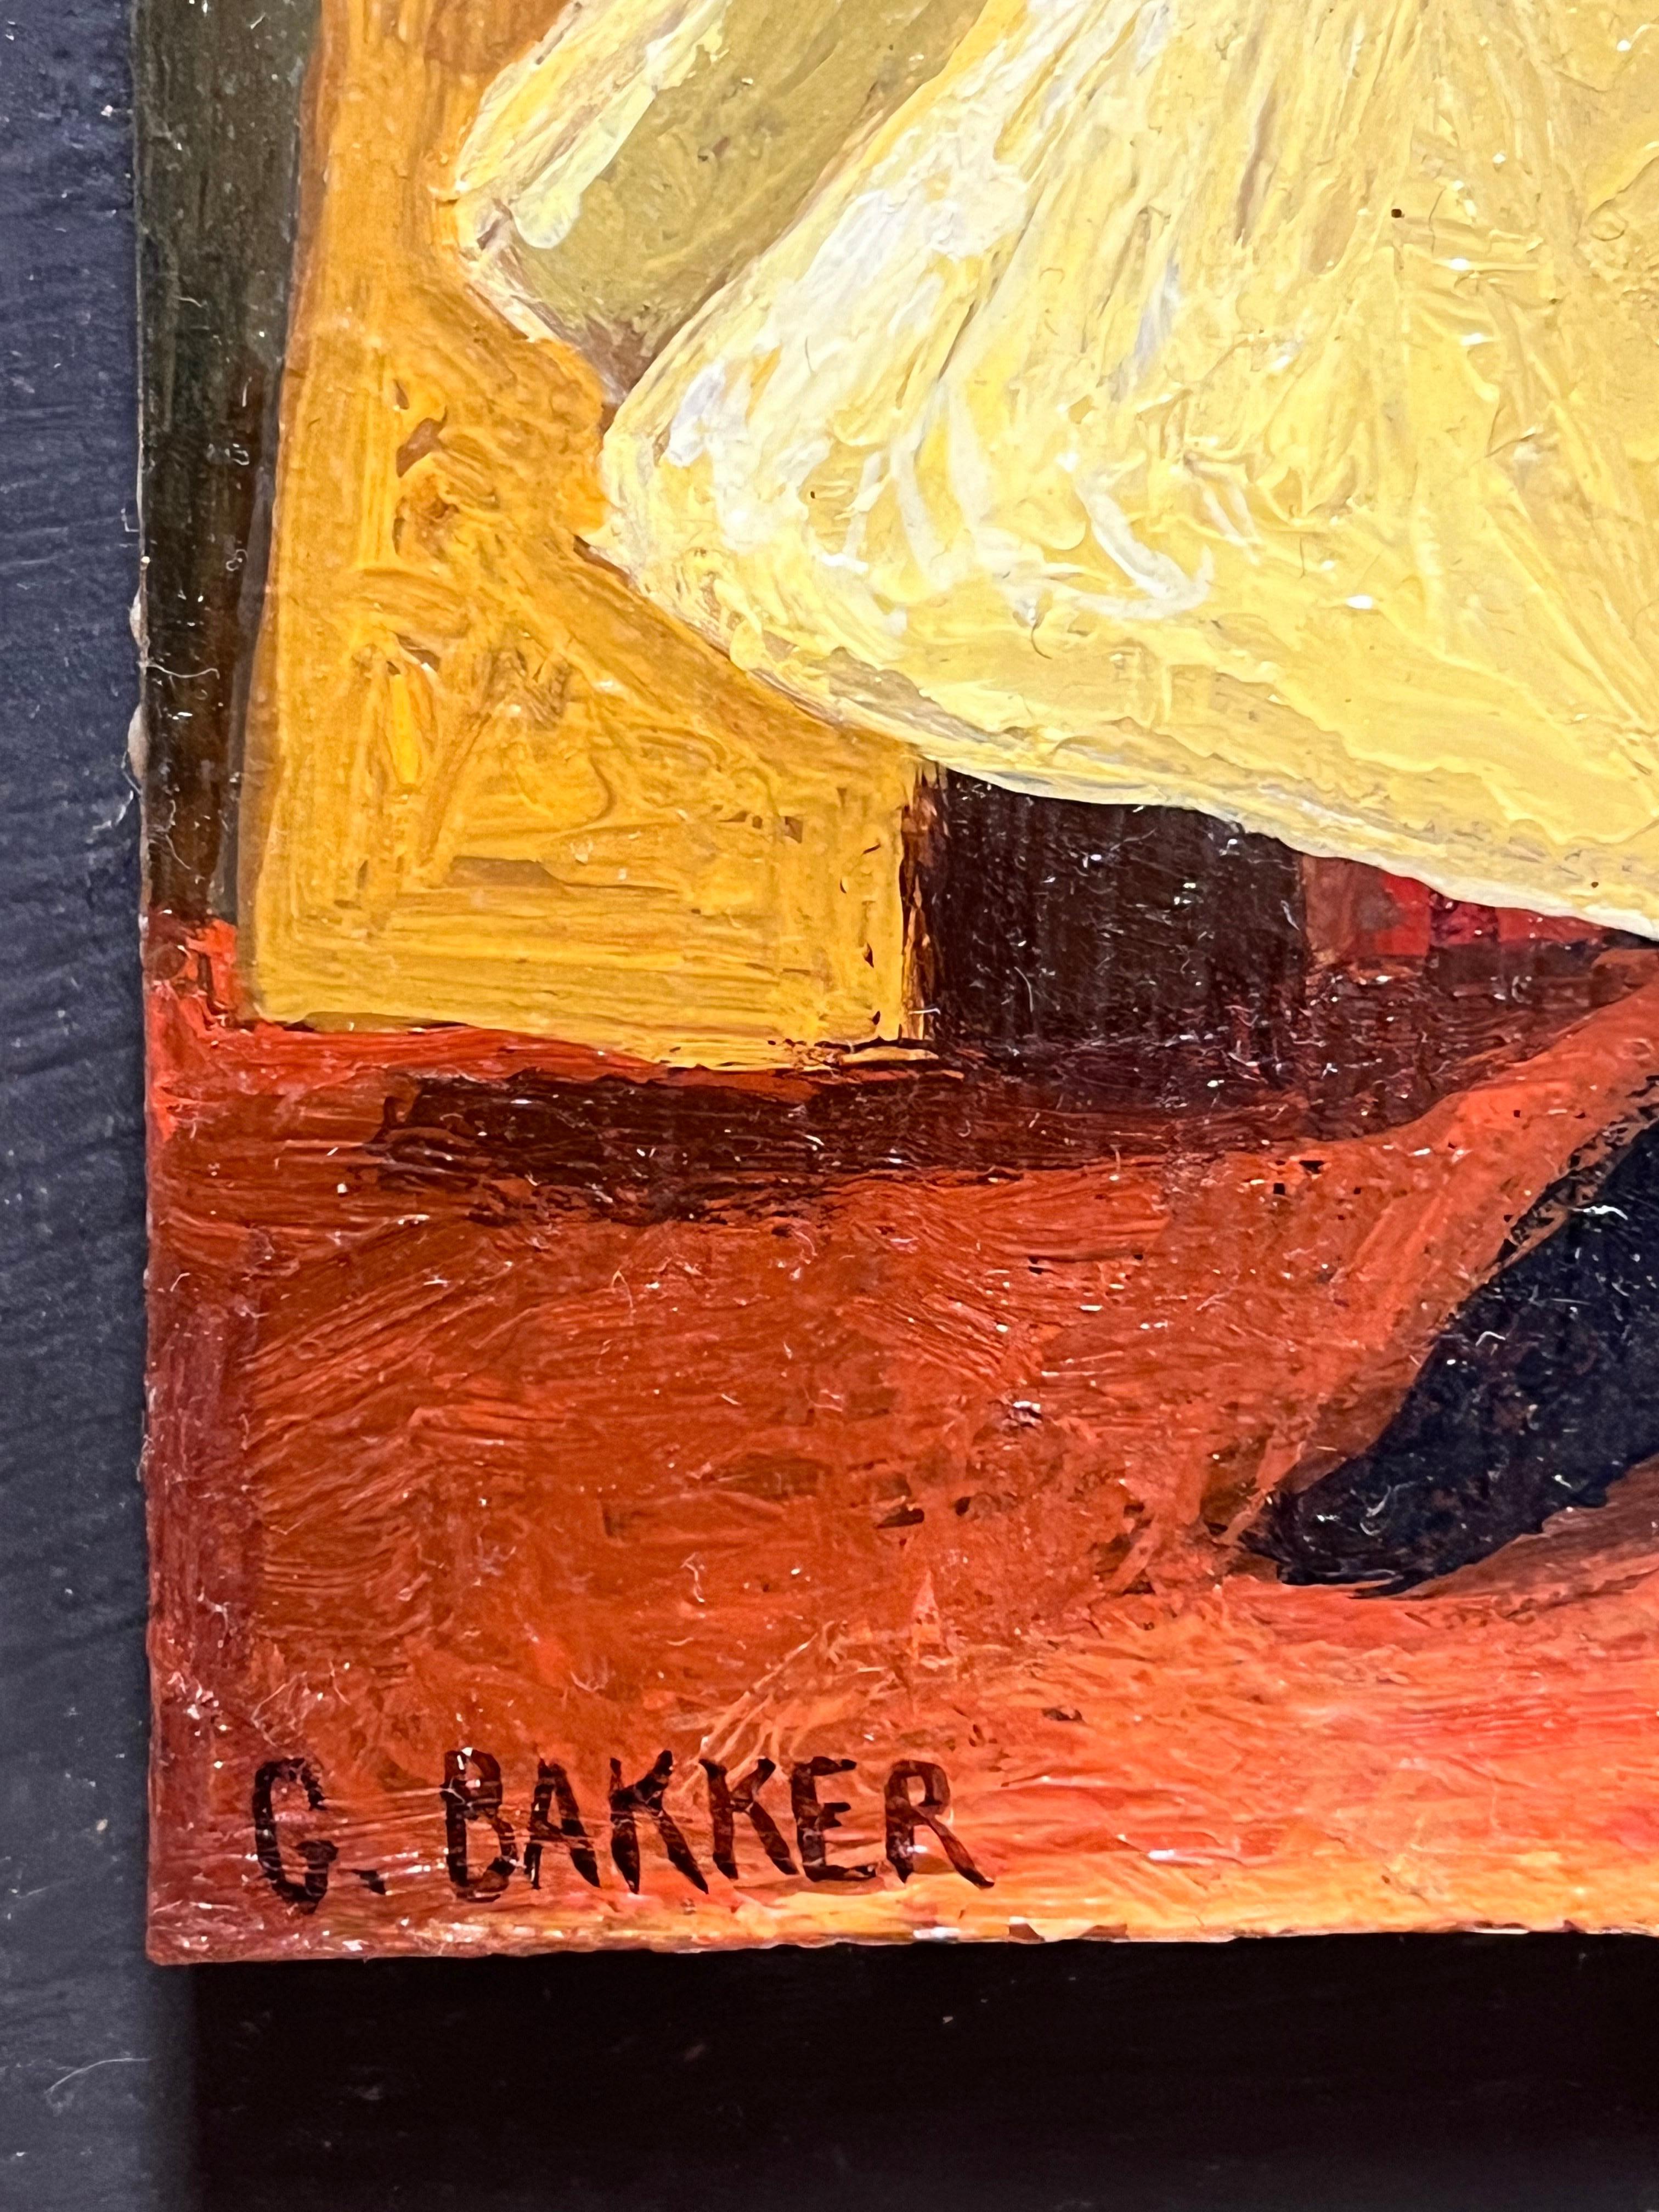 Gabrielle Bakker 1990 Boys Still Life Painting Gallery Provenance Custom Frame For Sale 2